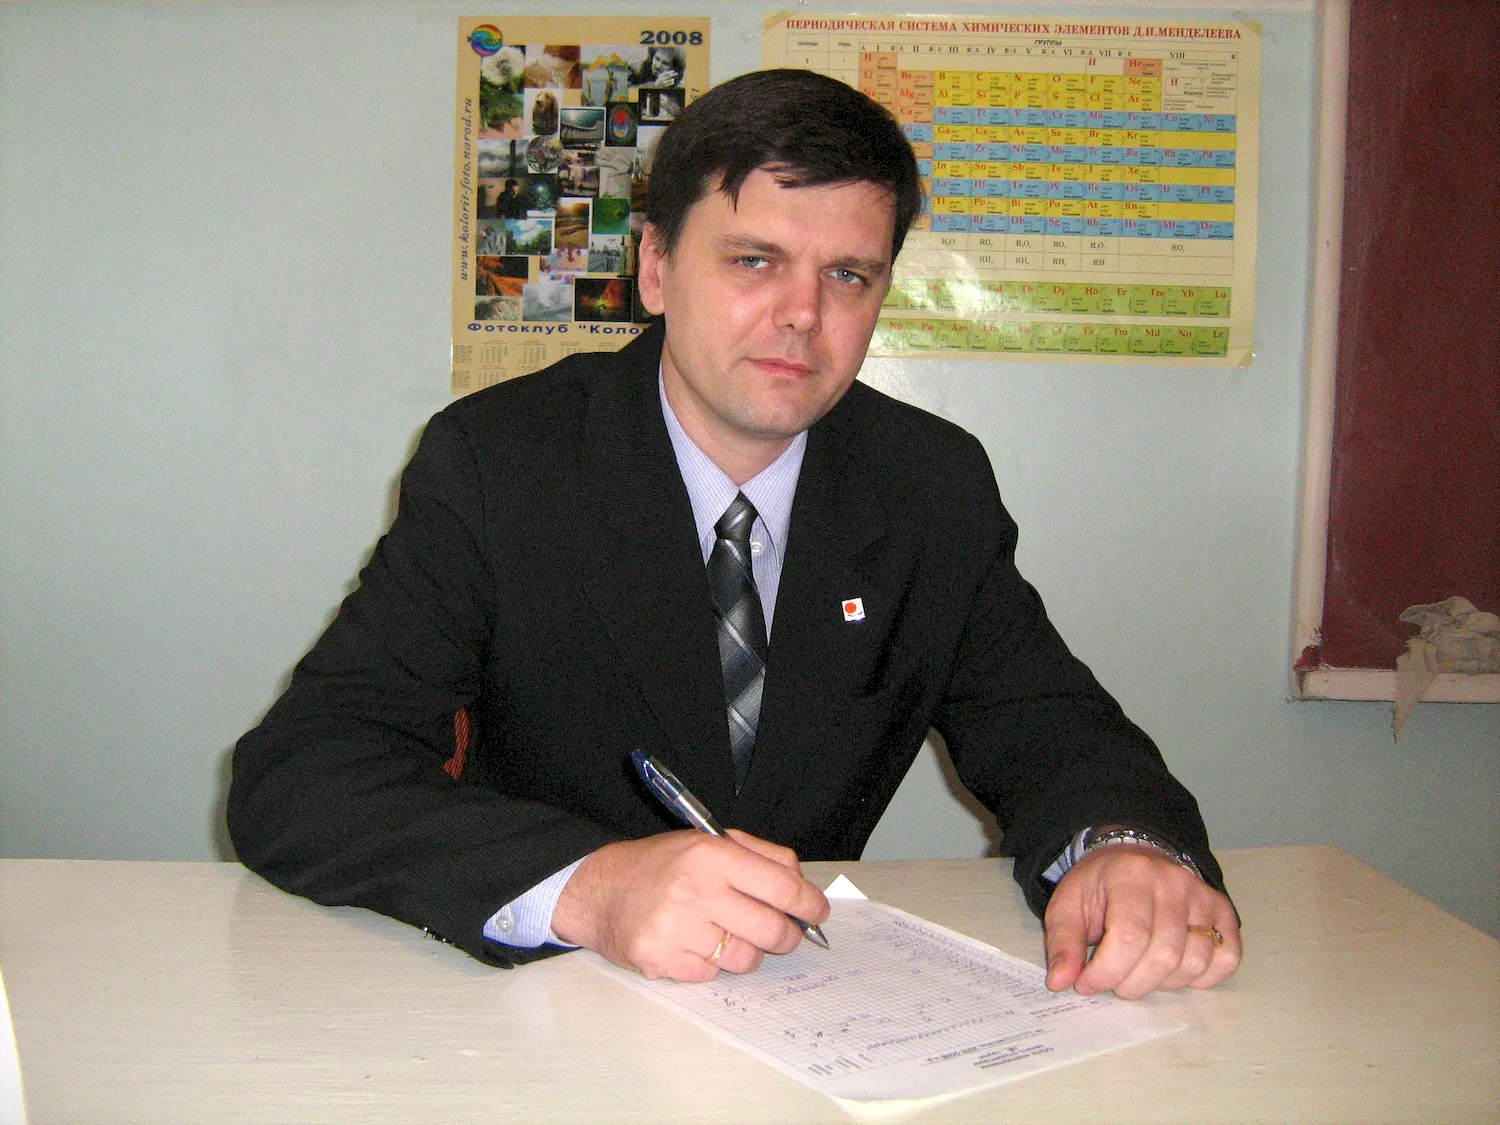 Ковбасюк Сергей Владимирович